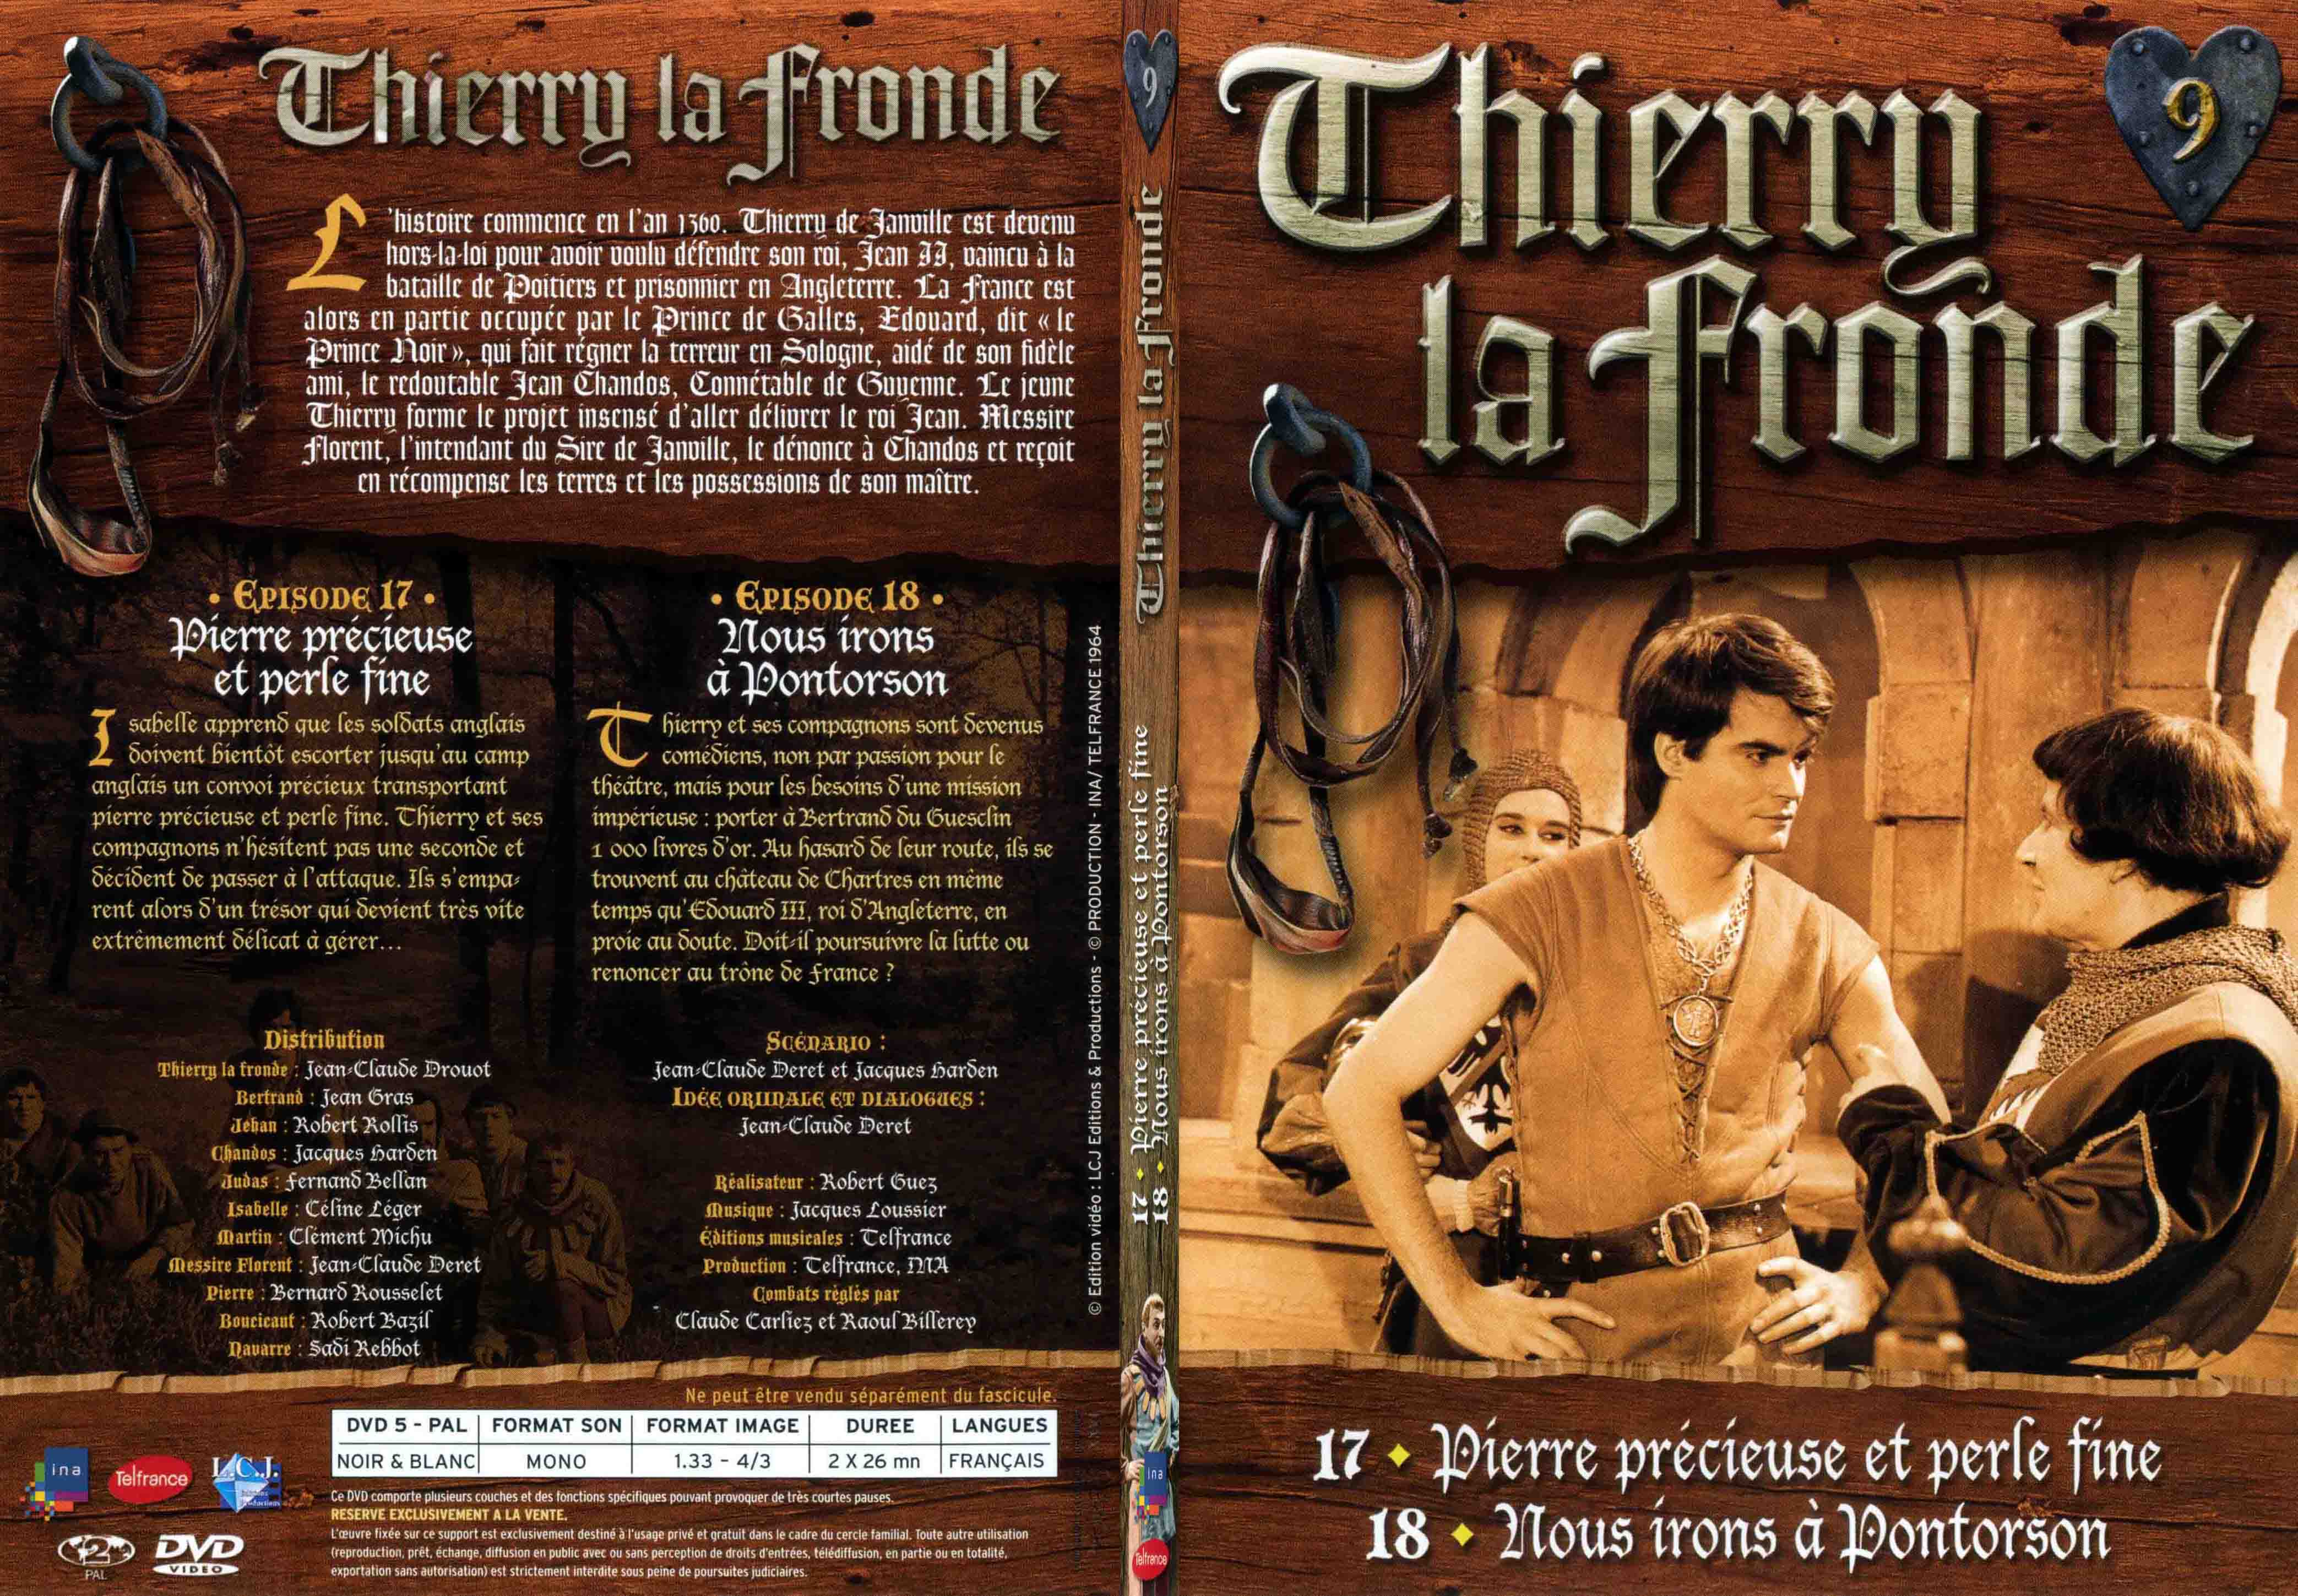 Jaquette DVD Thierry la Fronde vol 09 - SLIM